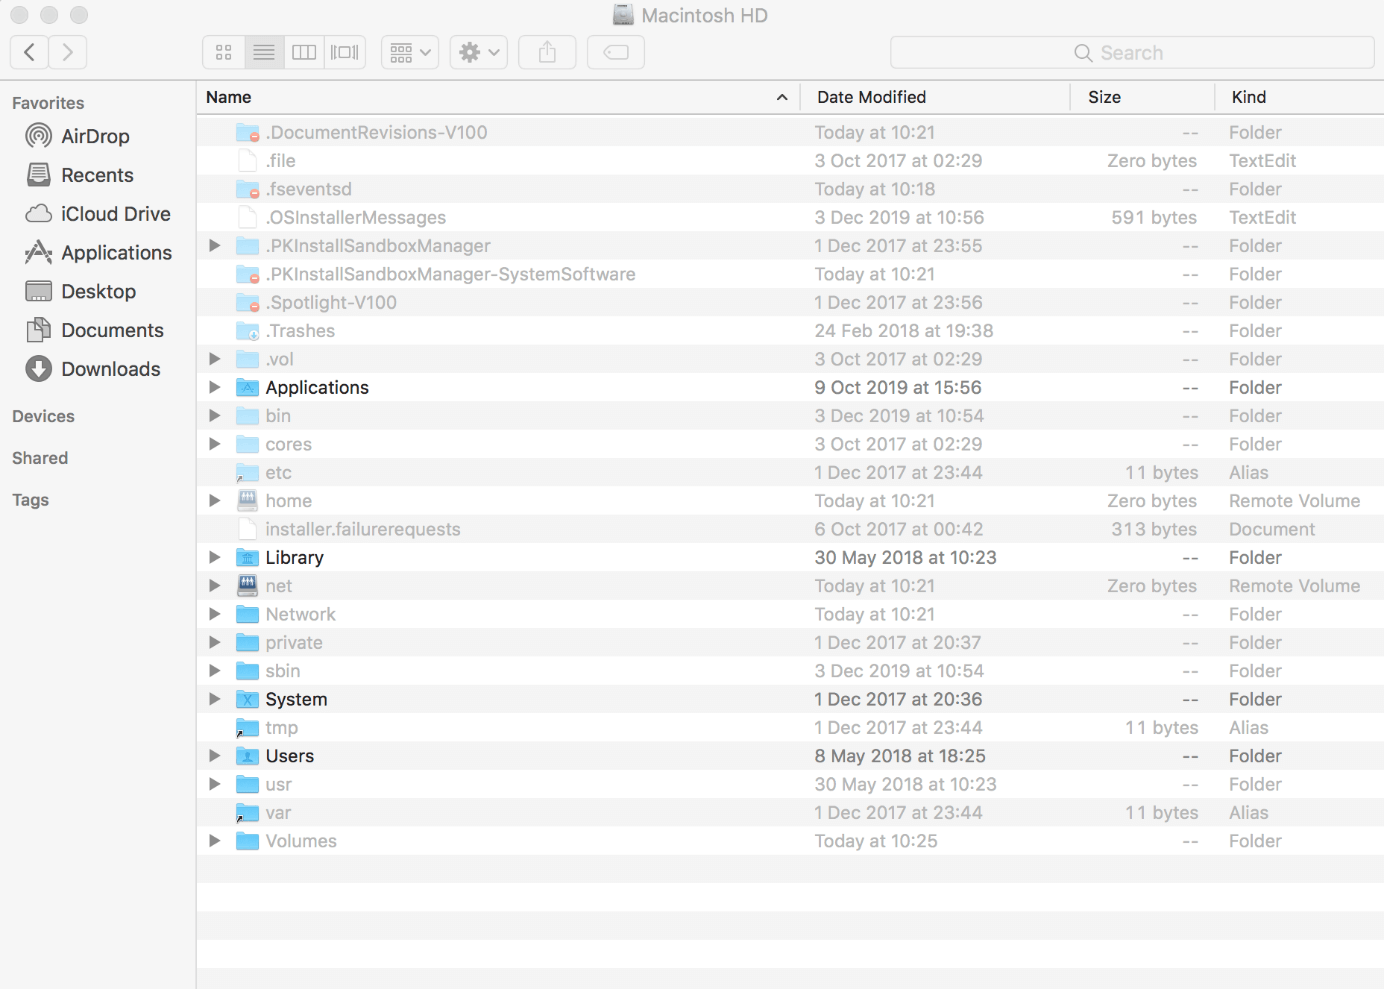 Showing hidden files on a Mac 